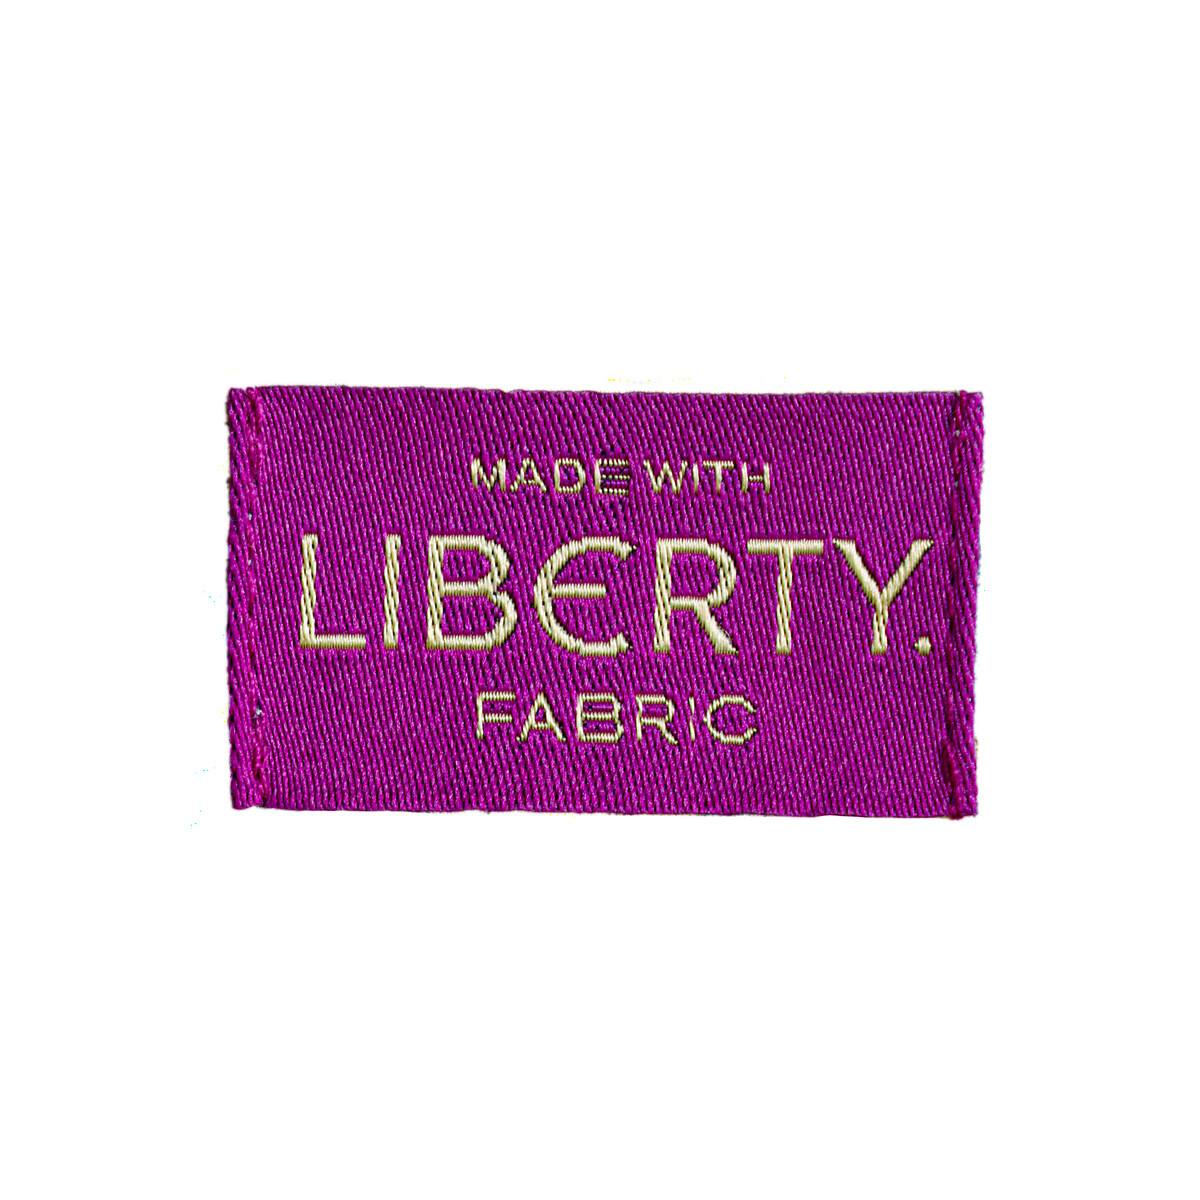 Шорты С принтом Liberty Fabrics 34 (FR) - 40 (RUS) другие LaRedoute, размер 34 (FR) - 40 (RUS) Шорты С принтом Liberty Fabrics 34 (FR) - 40 (RUS) другие - фото 5